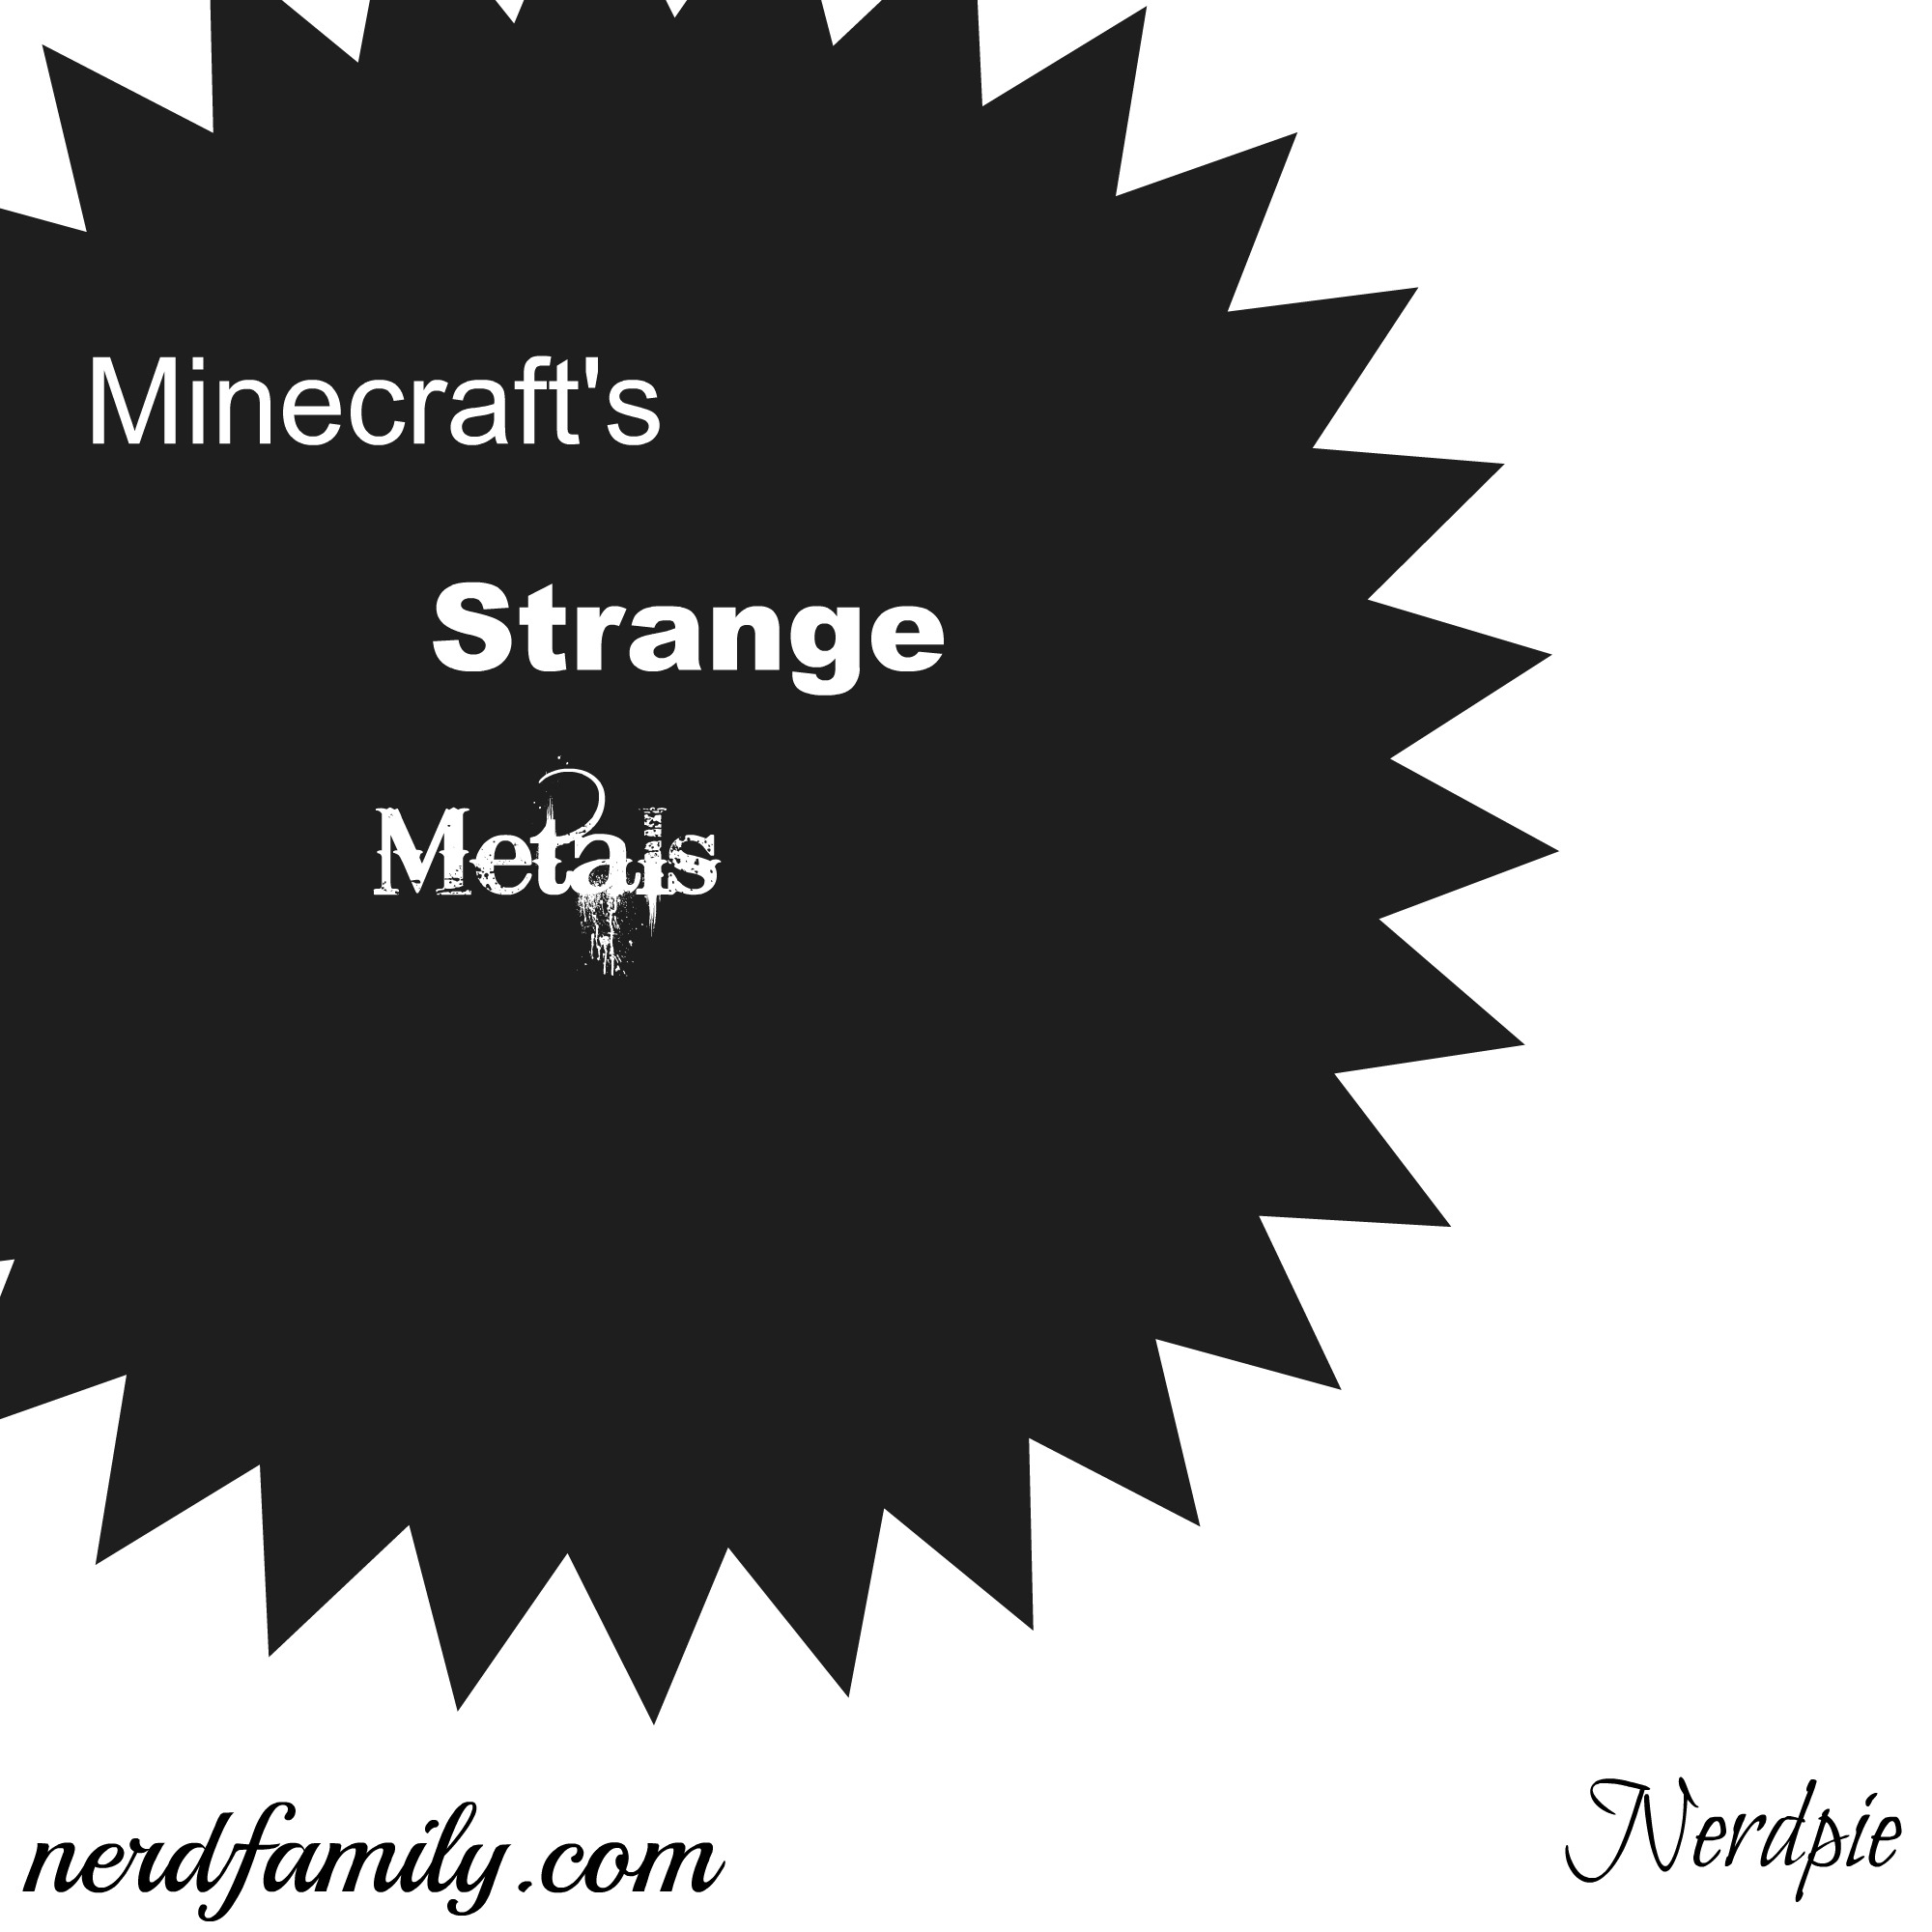 minecraft's strange metals